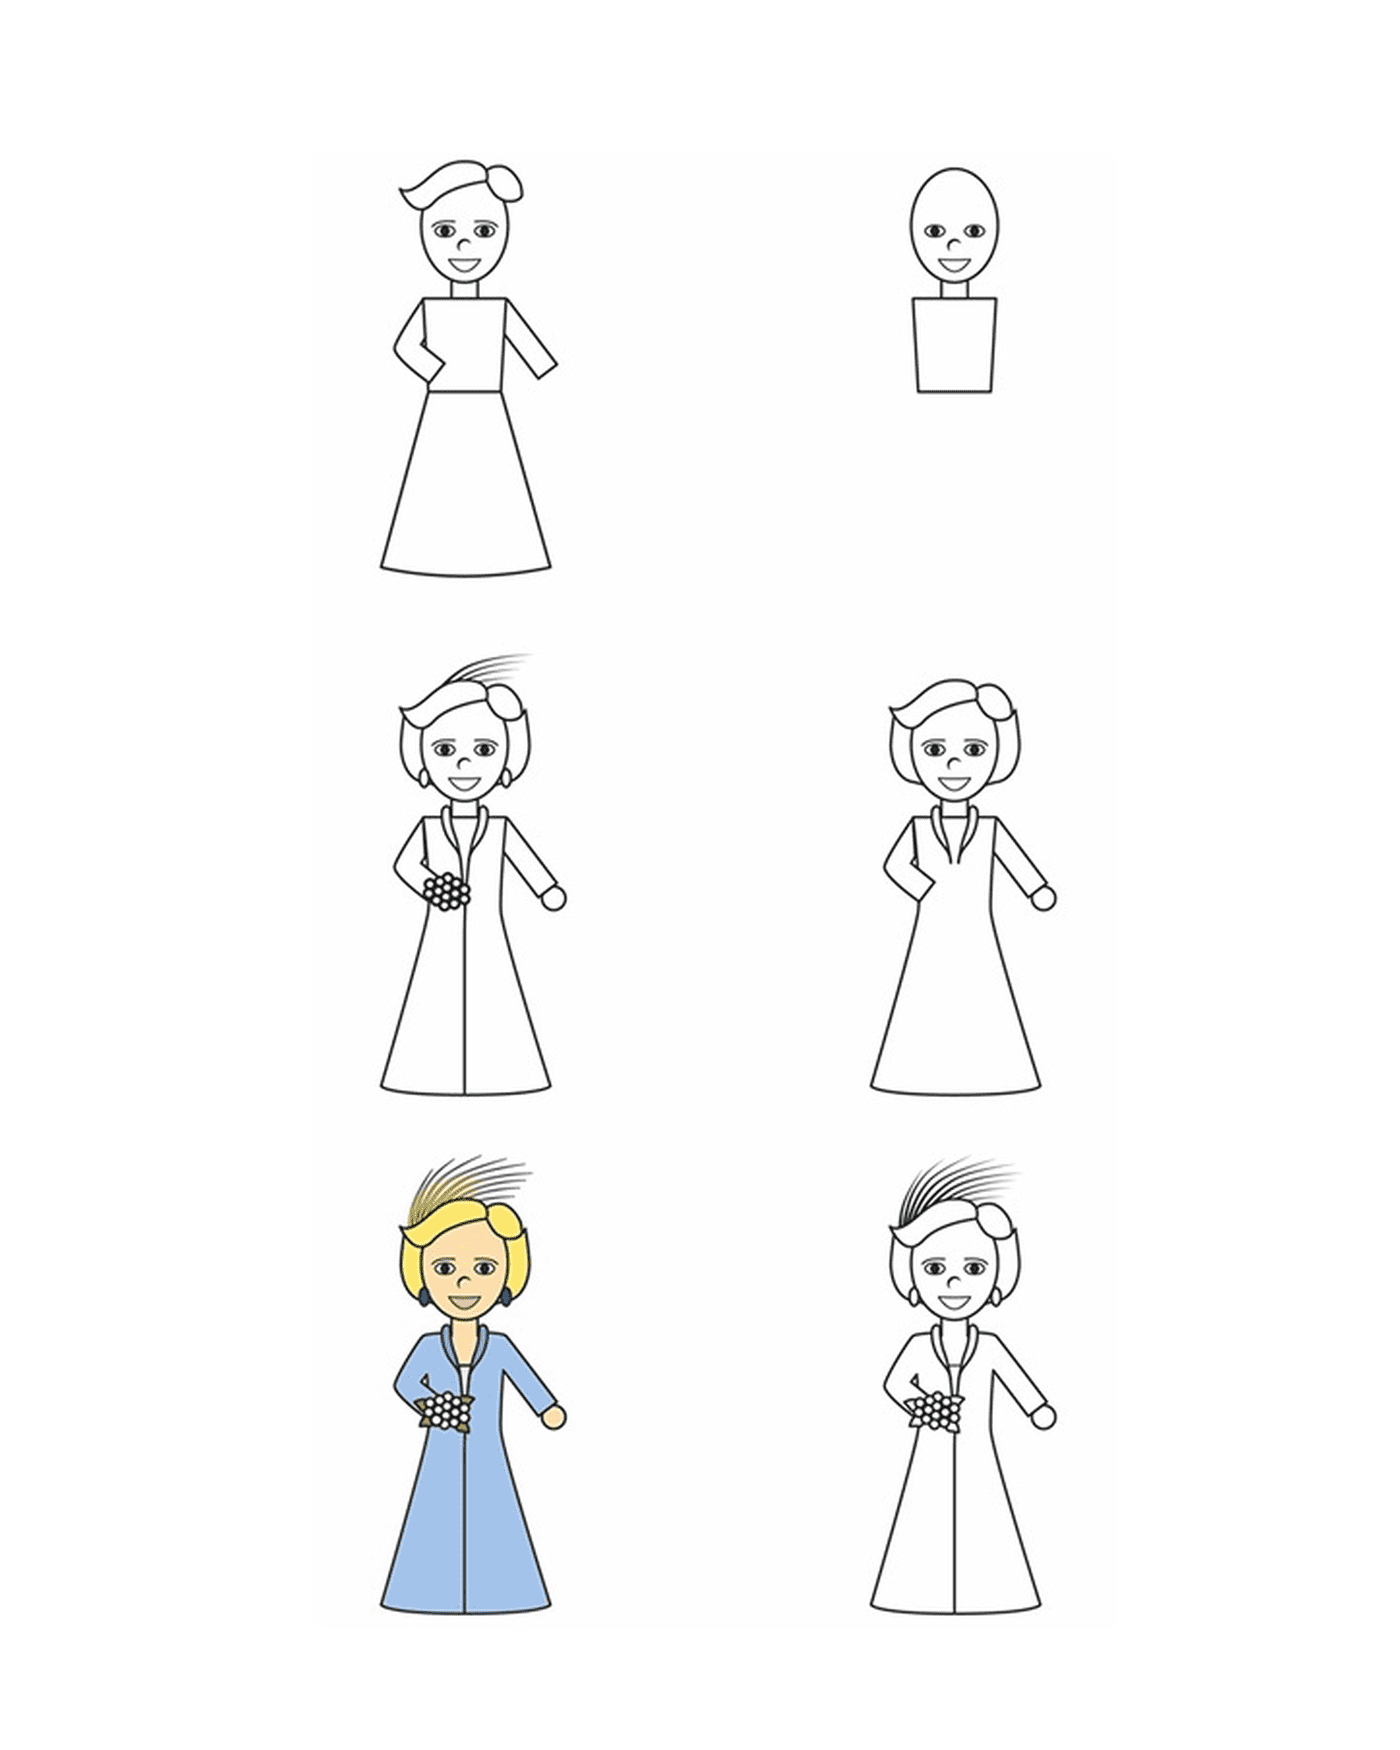  Cómo dibujar a una chica paso a paso 